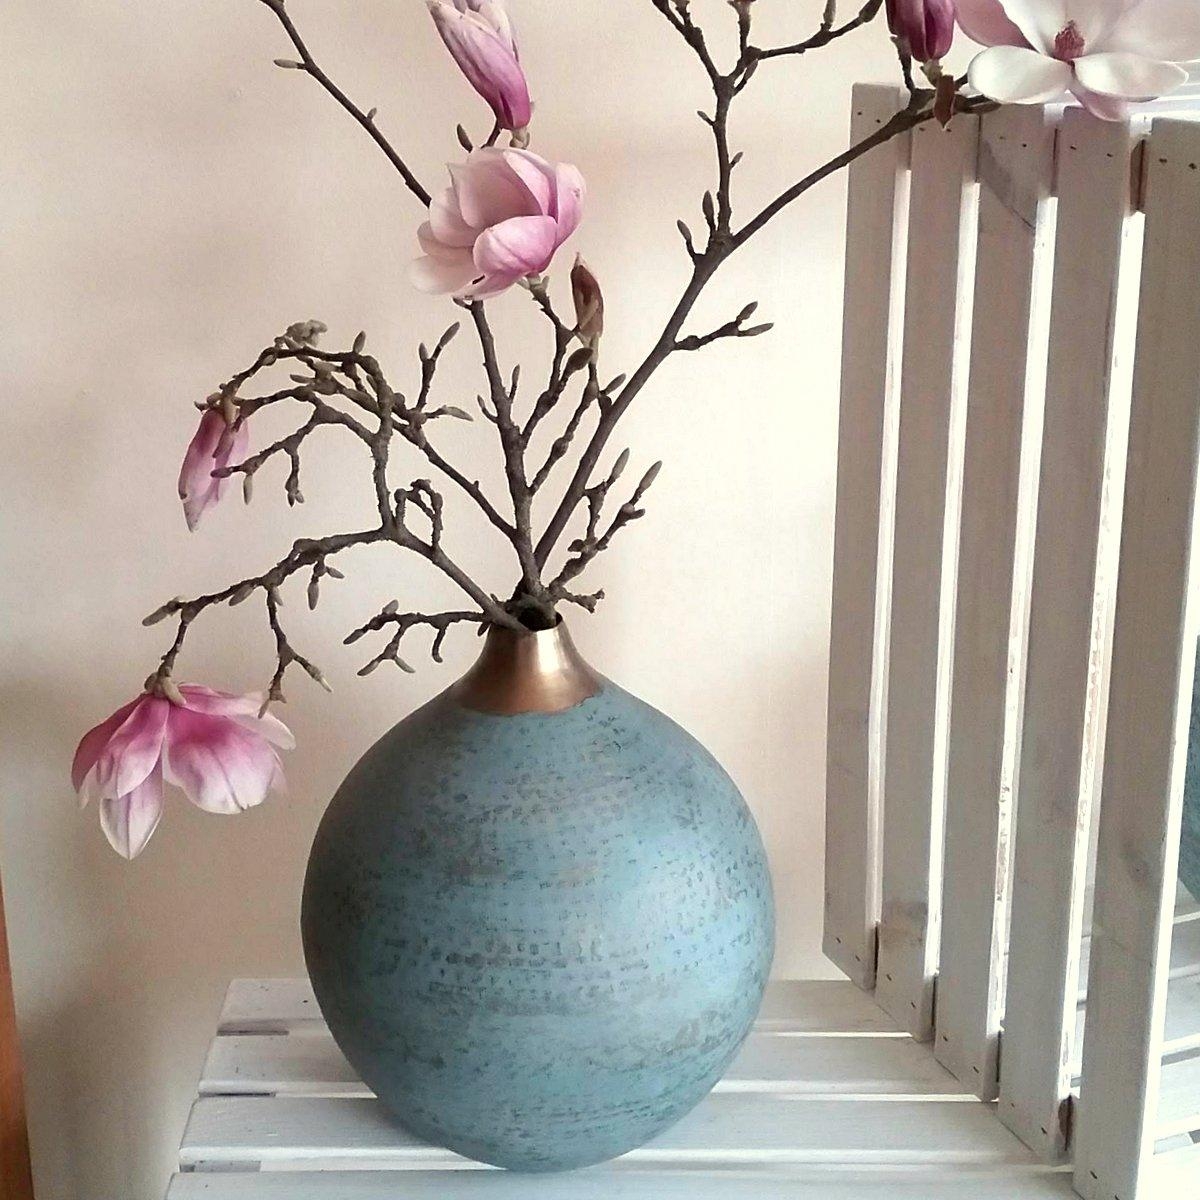 sind das nicht traumhaft schöne #Magnolienblüten ? Wie gefallen sie euch in dieser #vase ?edle #Blüten in edlen #Gefäßen